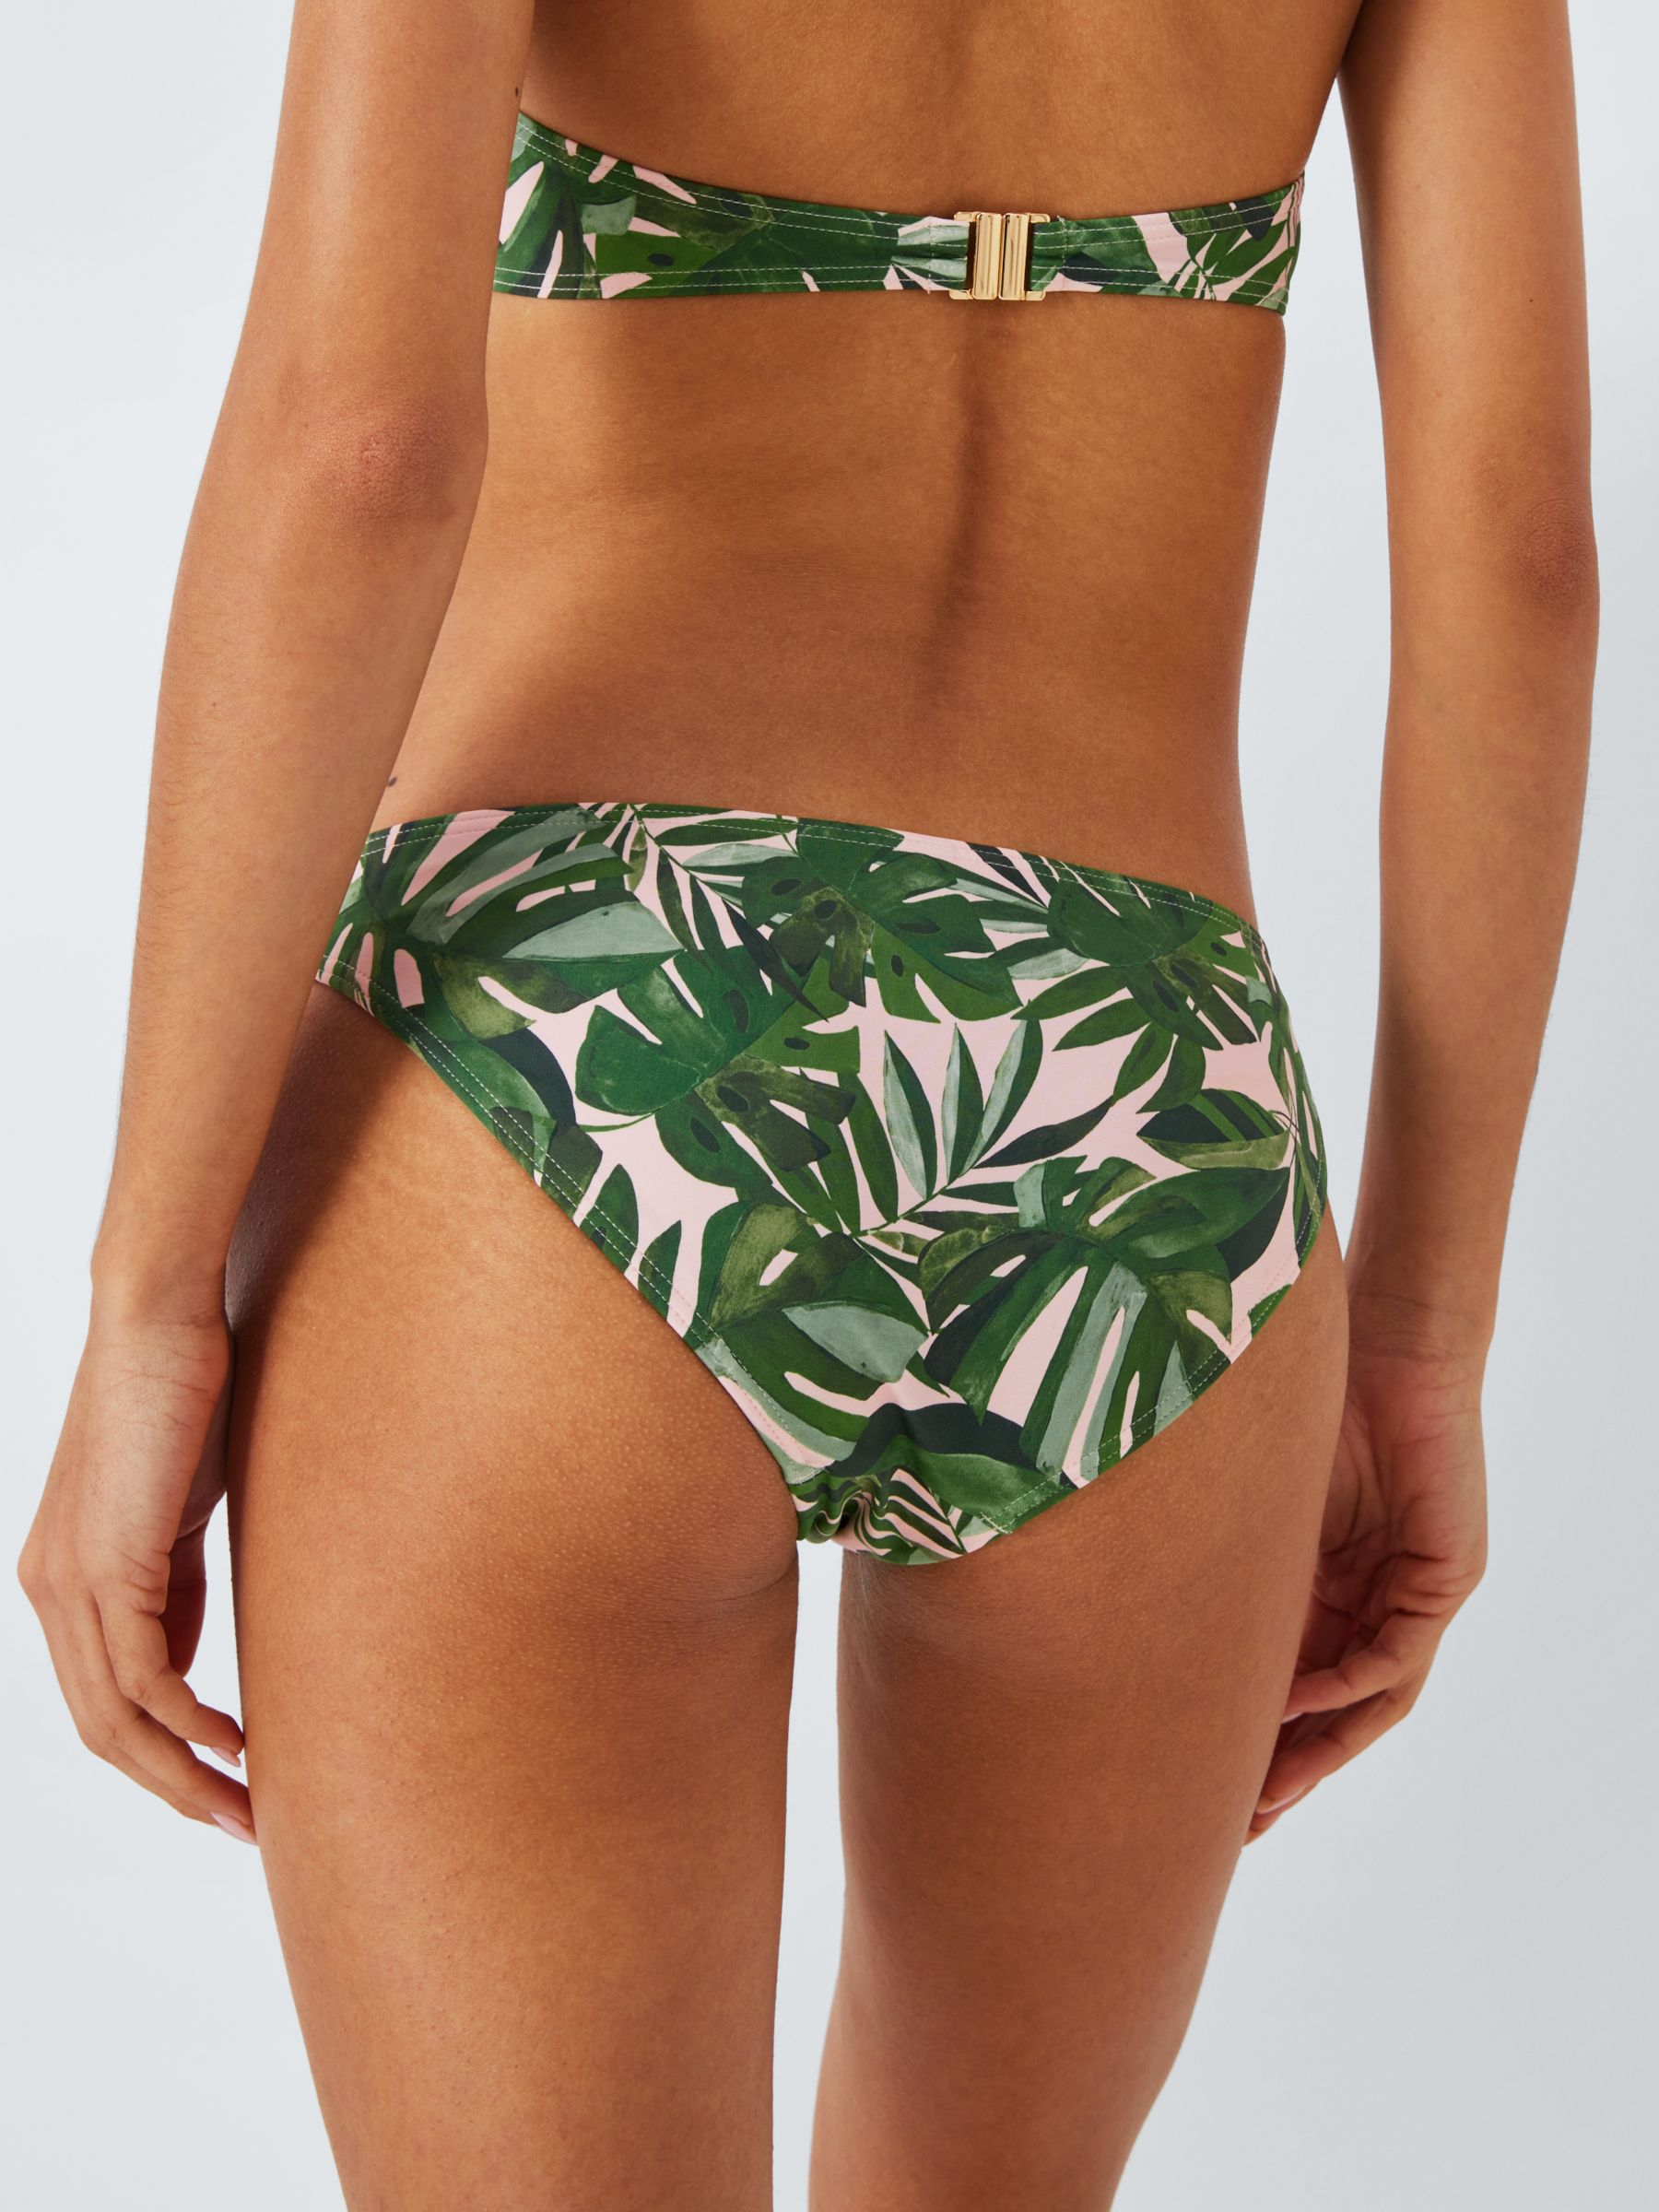 John Lewis Tropic Palm Print Bikini Bottoms, Khaki, 18